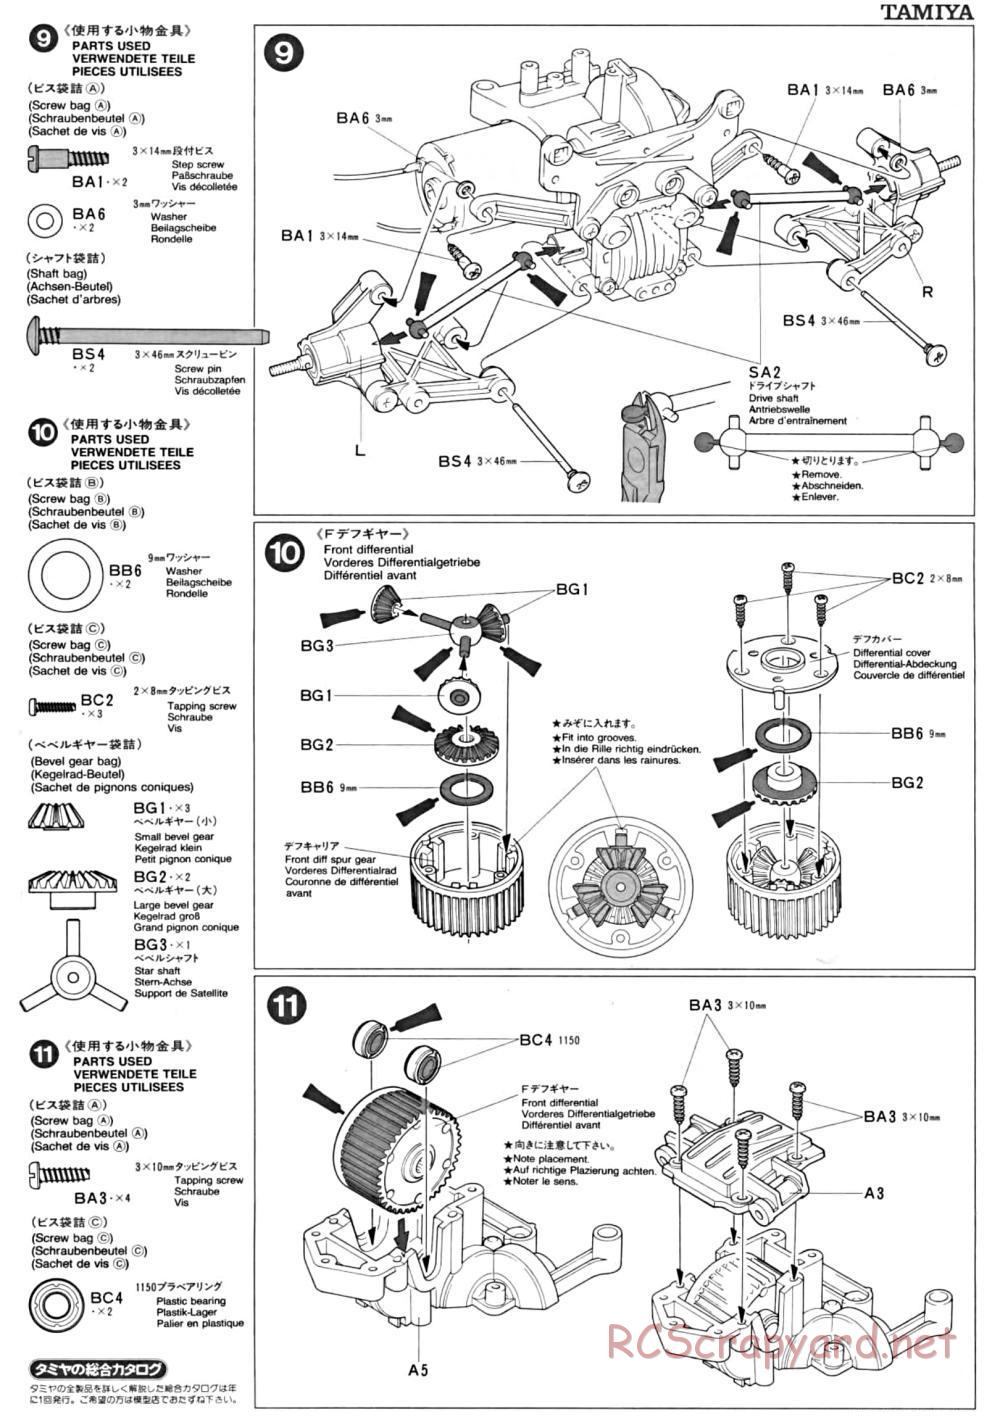 Tamiya - TA-01 Chassis - Manual - Page 4